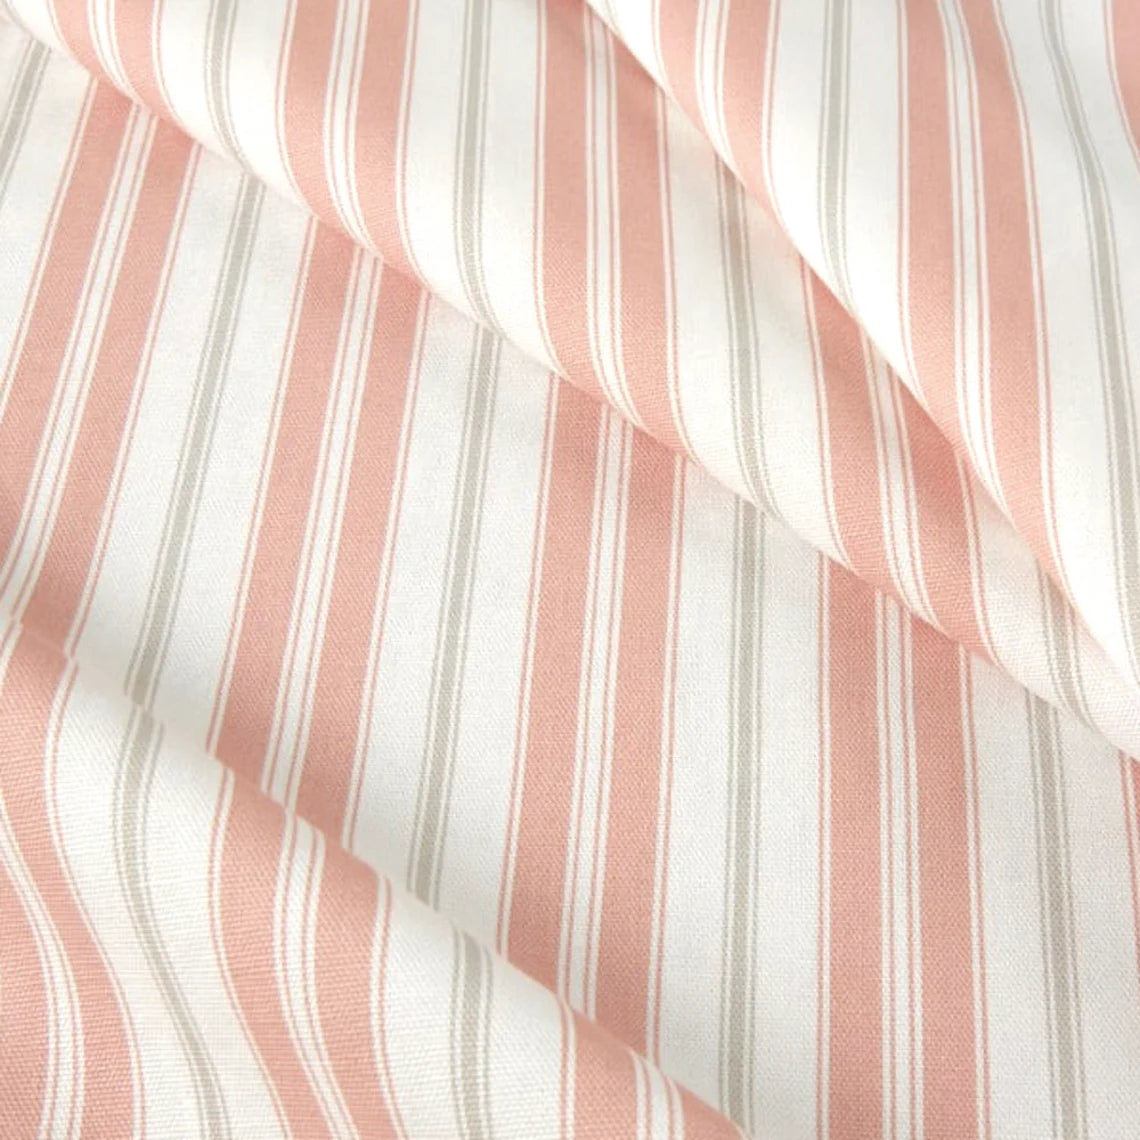 gathered crib skirt in newbury blush stripe- pink, gray, white